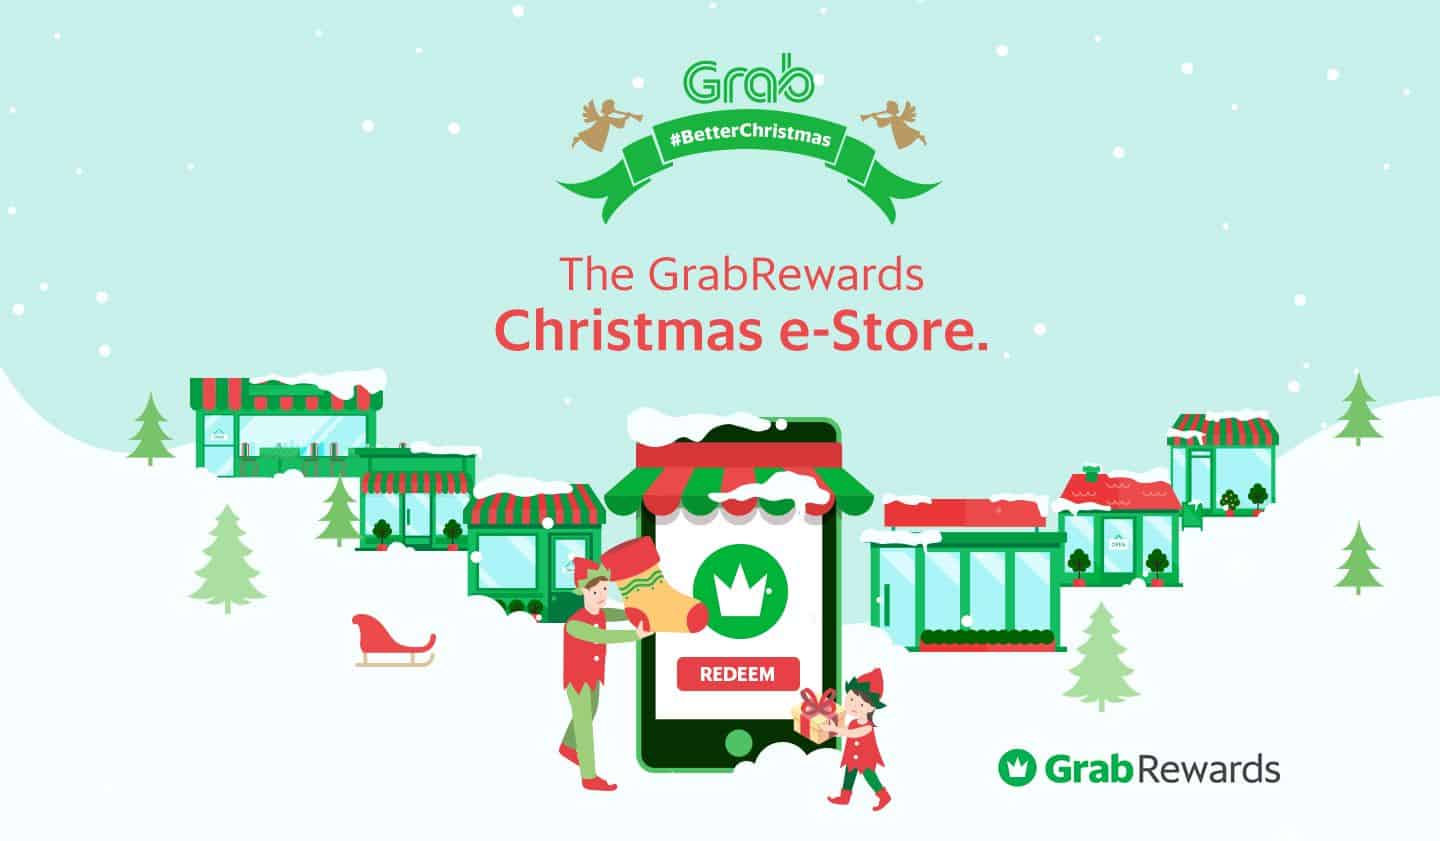 The GrabRewards Christmas e-Store